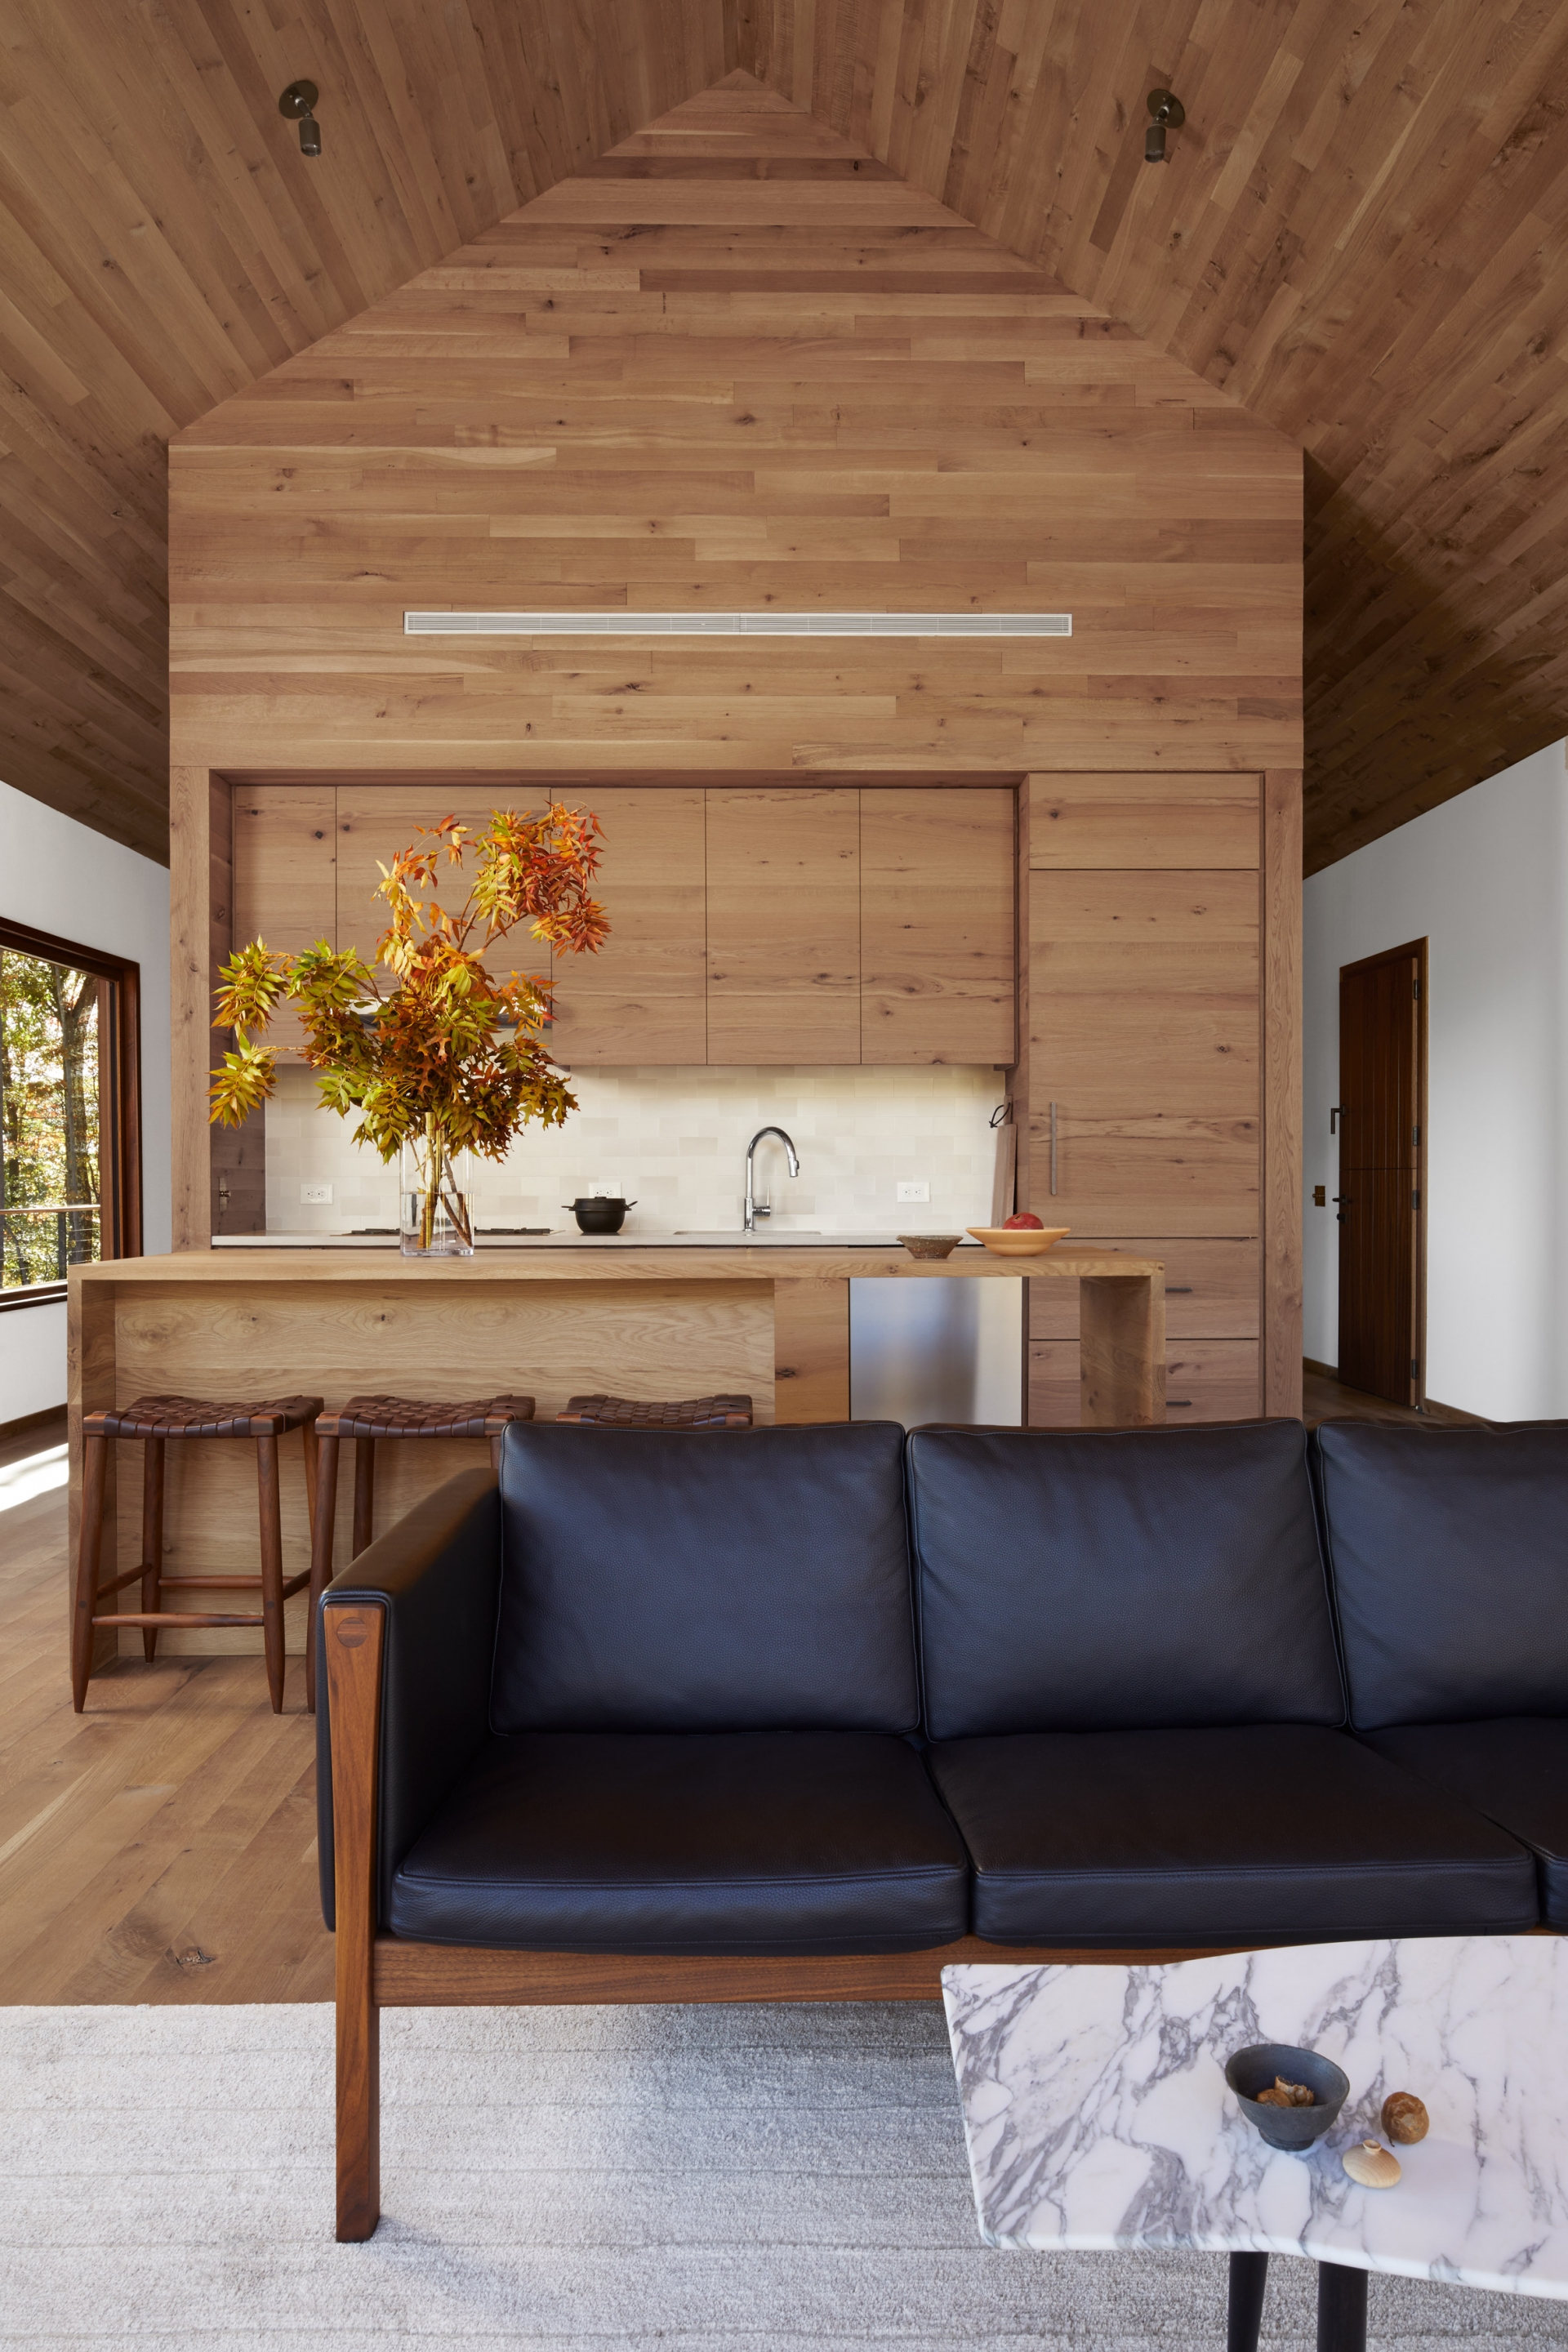 Bộ ghế sofa khung gỗ đệm da màu đen cho cảm giác vững chãi và mạnh mẽ. Phía sau là phòng bếp với hệ tủ bếp và đảo bếp bằng gỗ đẹp mắt. 